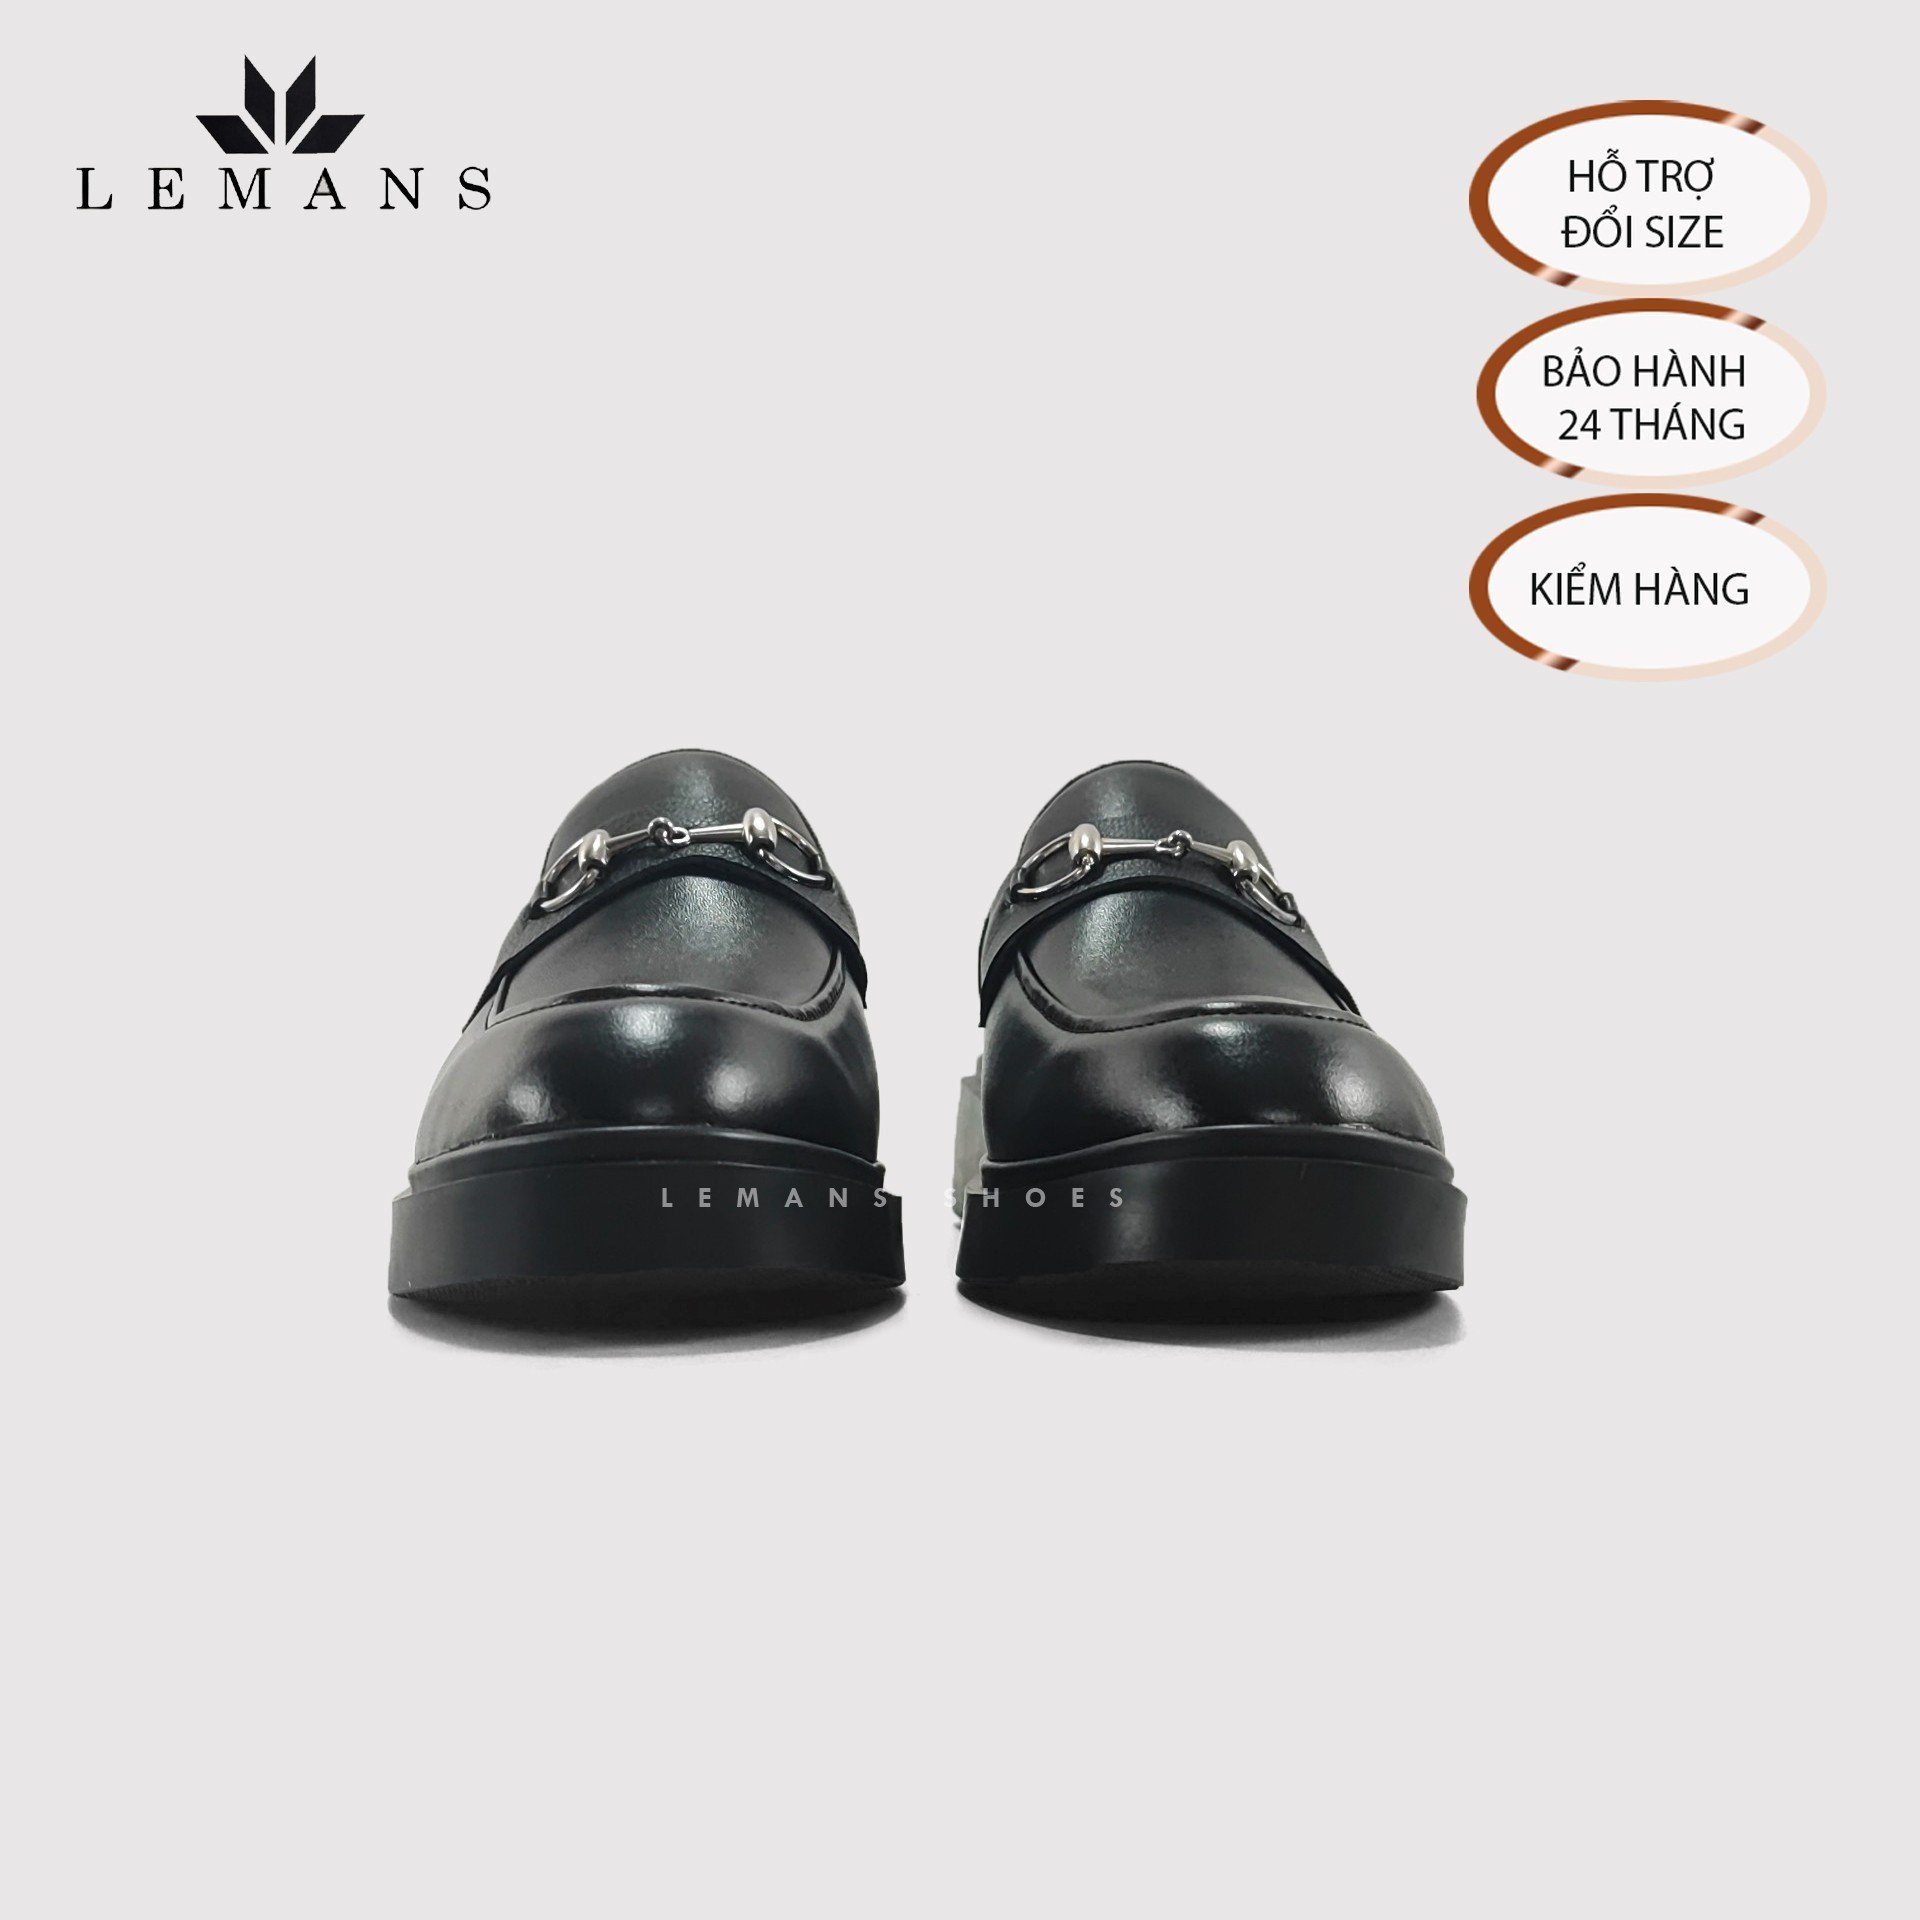 Giày Sục LEMANS Mules Loafer - Black. Da bò nguyên tấm Đế khuôn độc quyền tăng cao 4cm. Bảo hành 24 Tháng